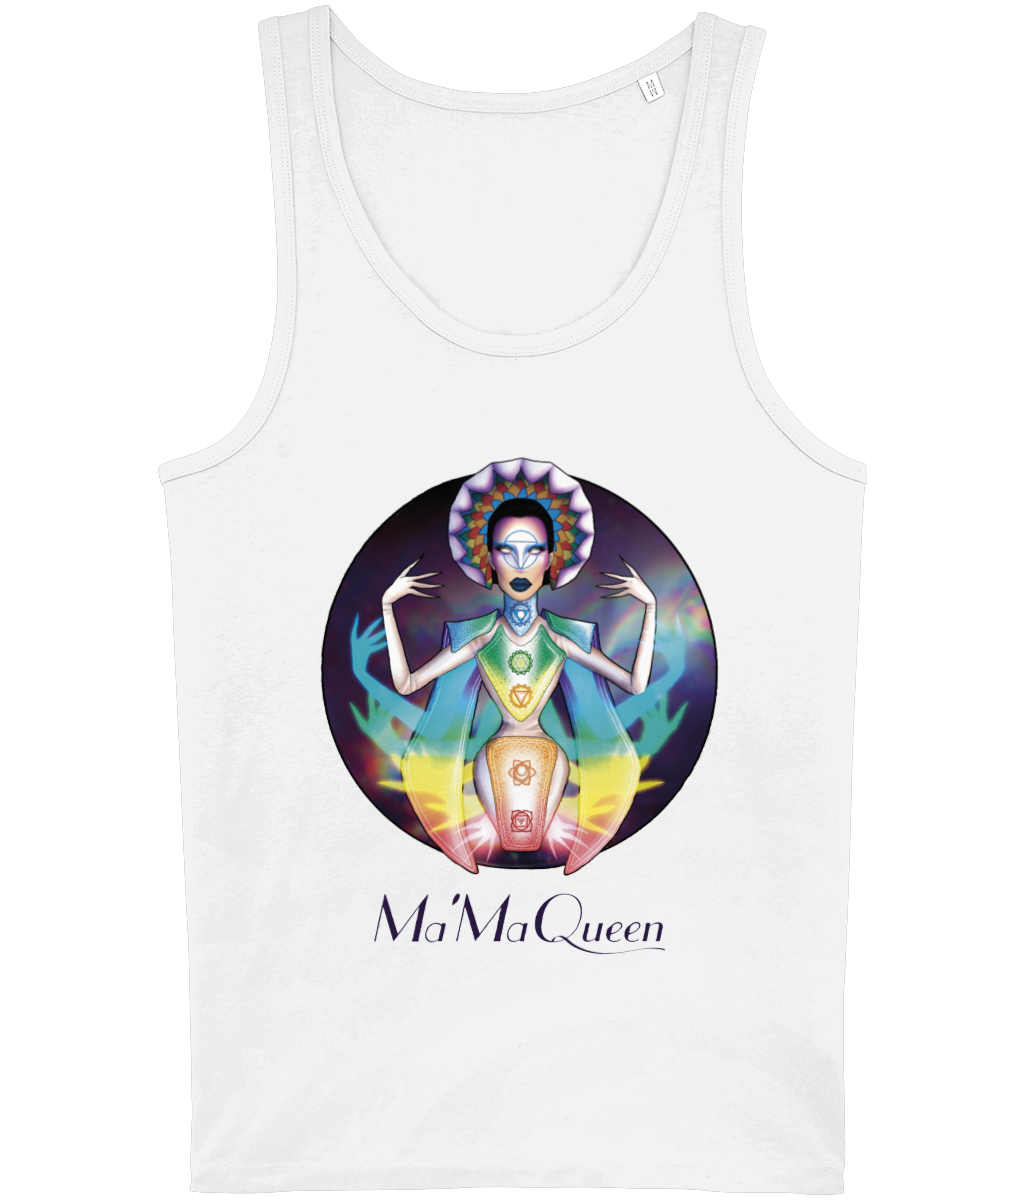 Mama Queen - Spiritual Vision Vest